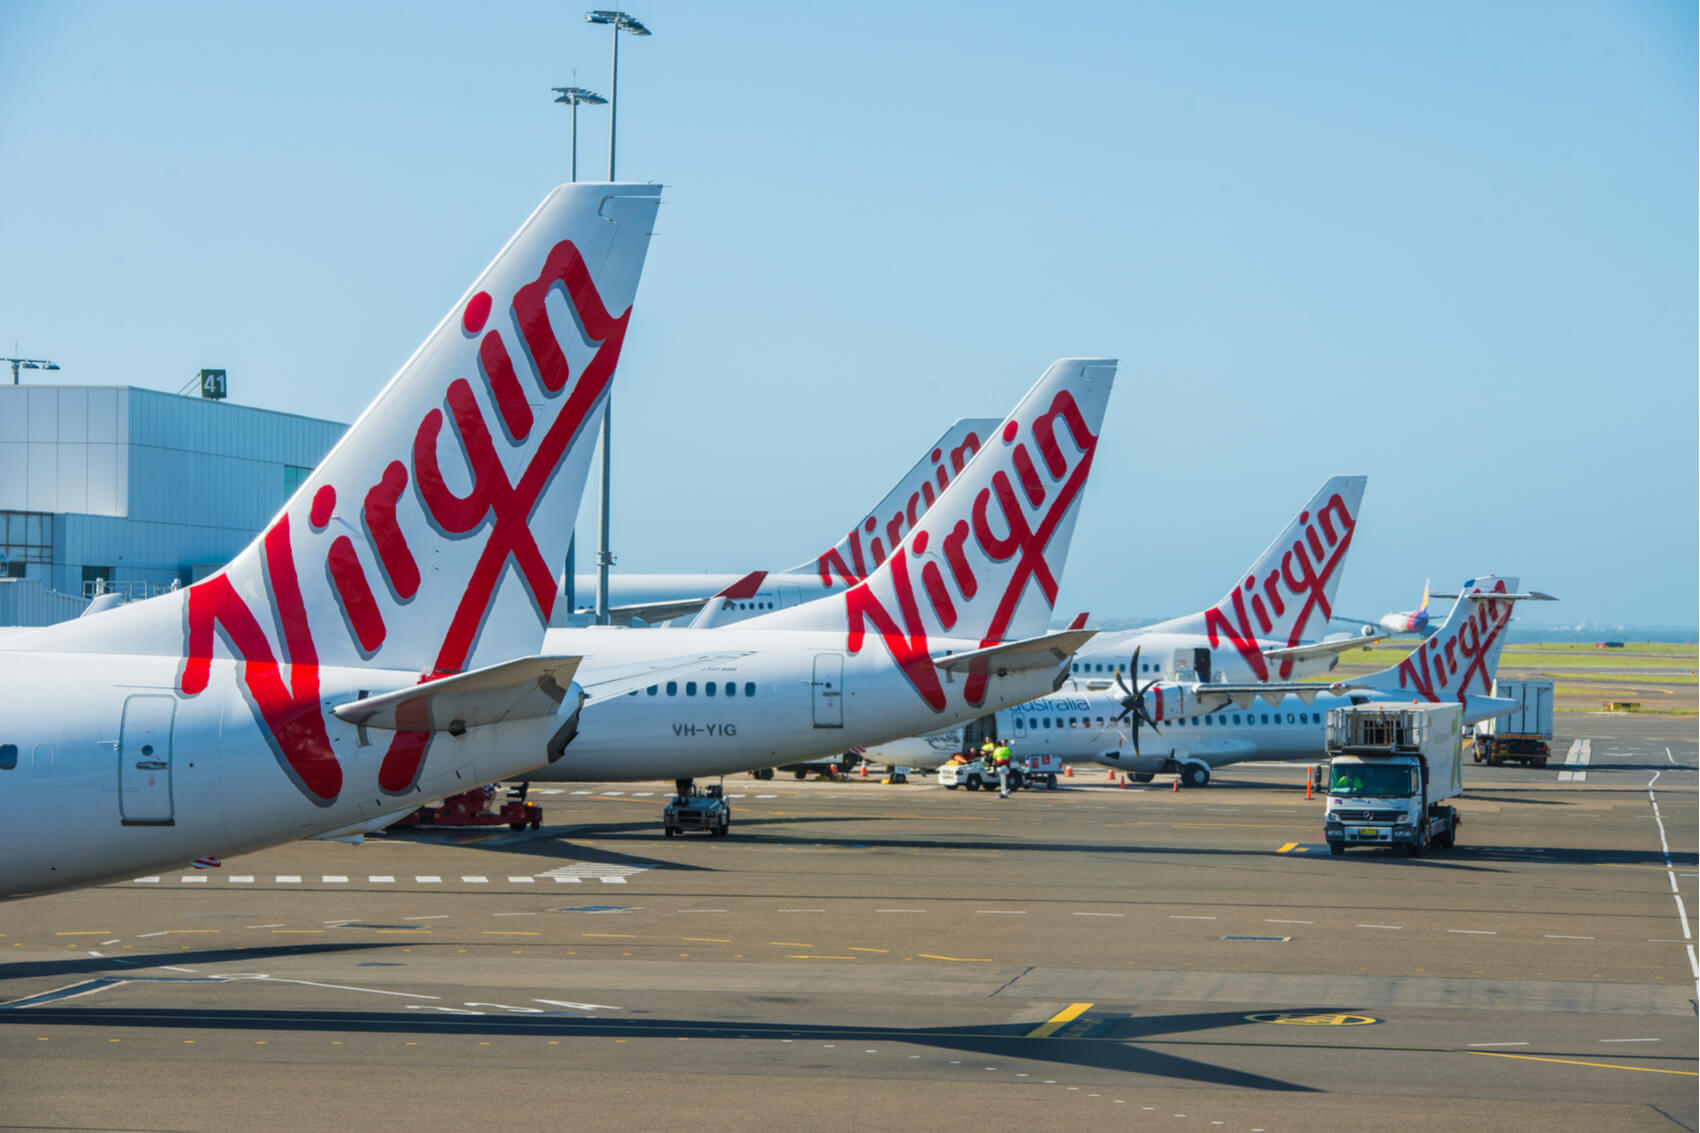 Các chuyến bay tới Queensland sẽ được hãng hàng không Virgin giảm giá vé